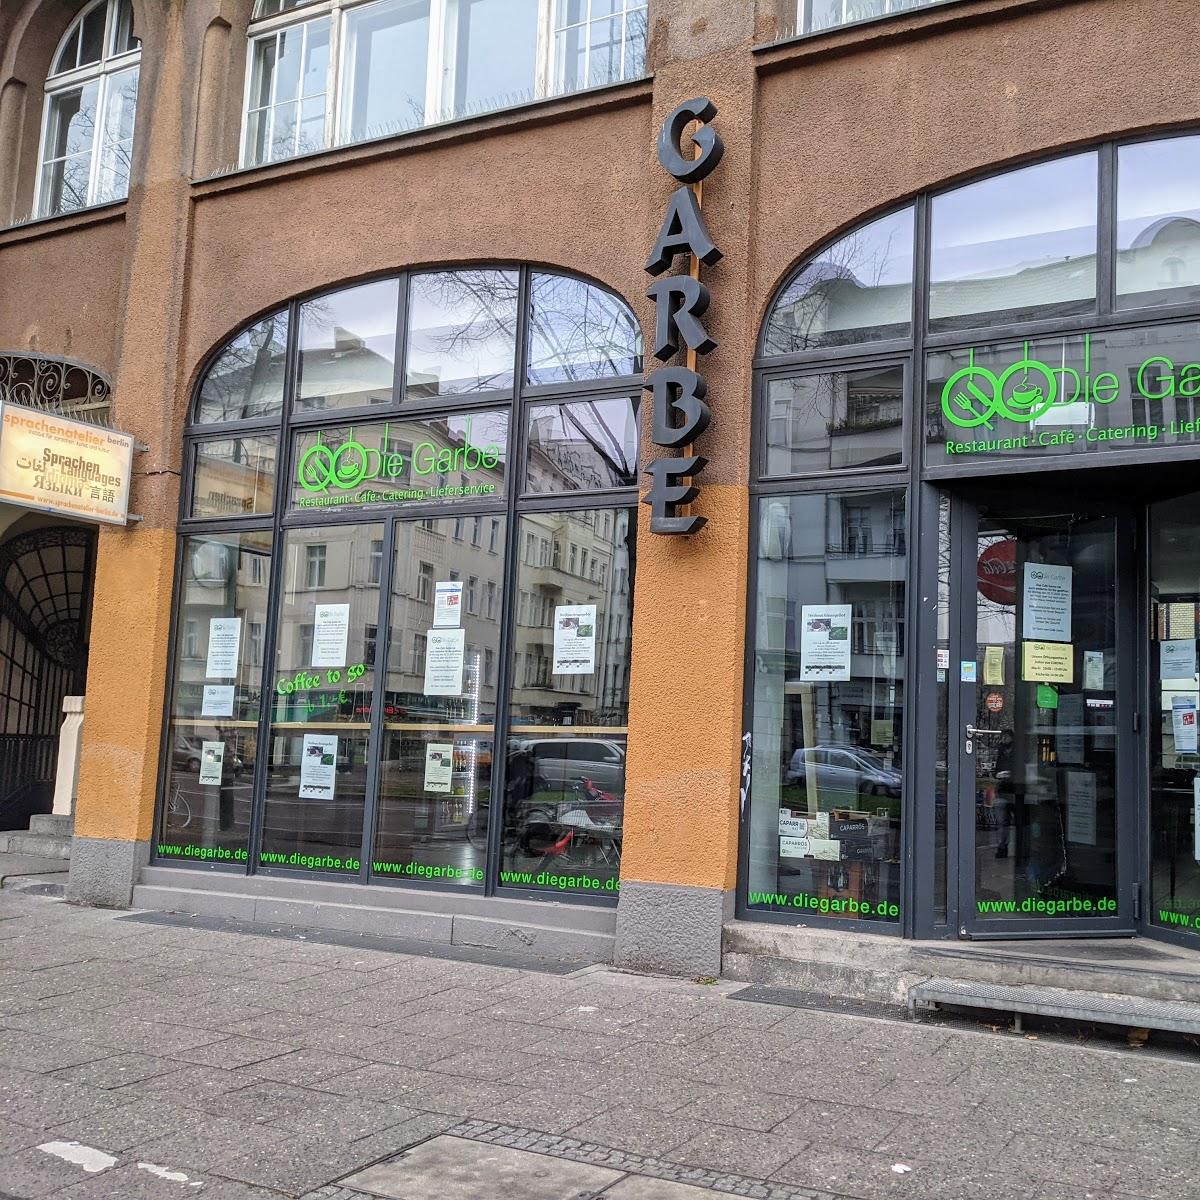 Restaurant "Die Garbe" in Berlin